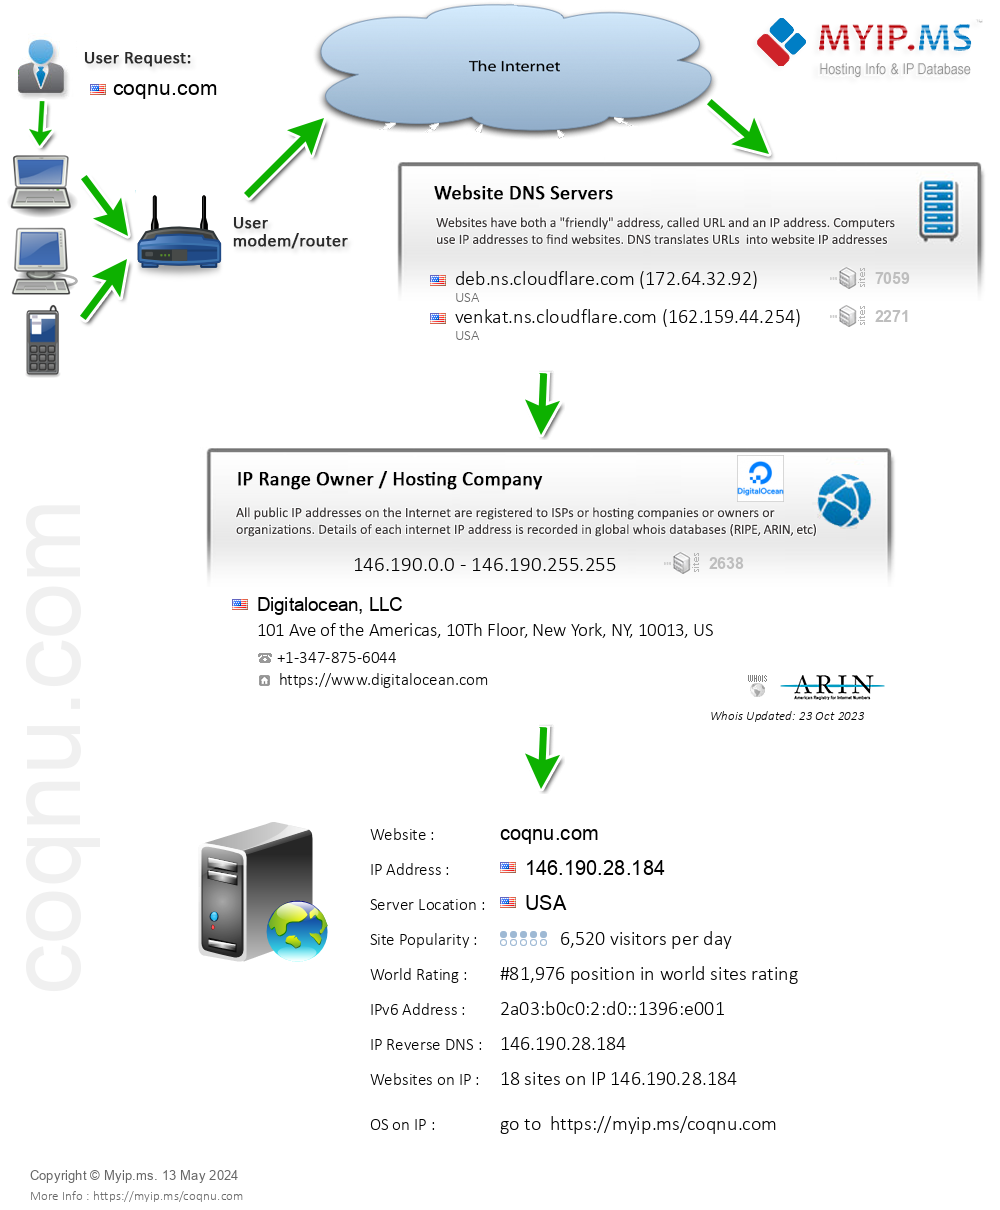 Coqnu.com - Website Hosting Visual IP Diagram